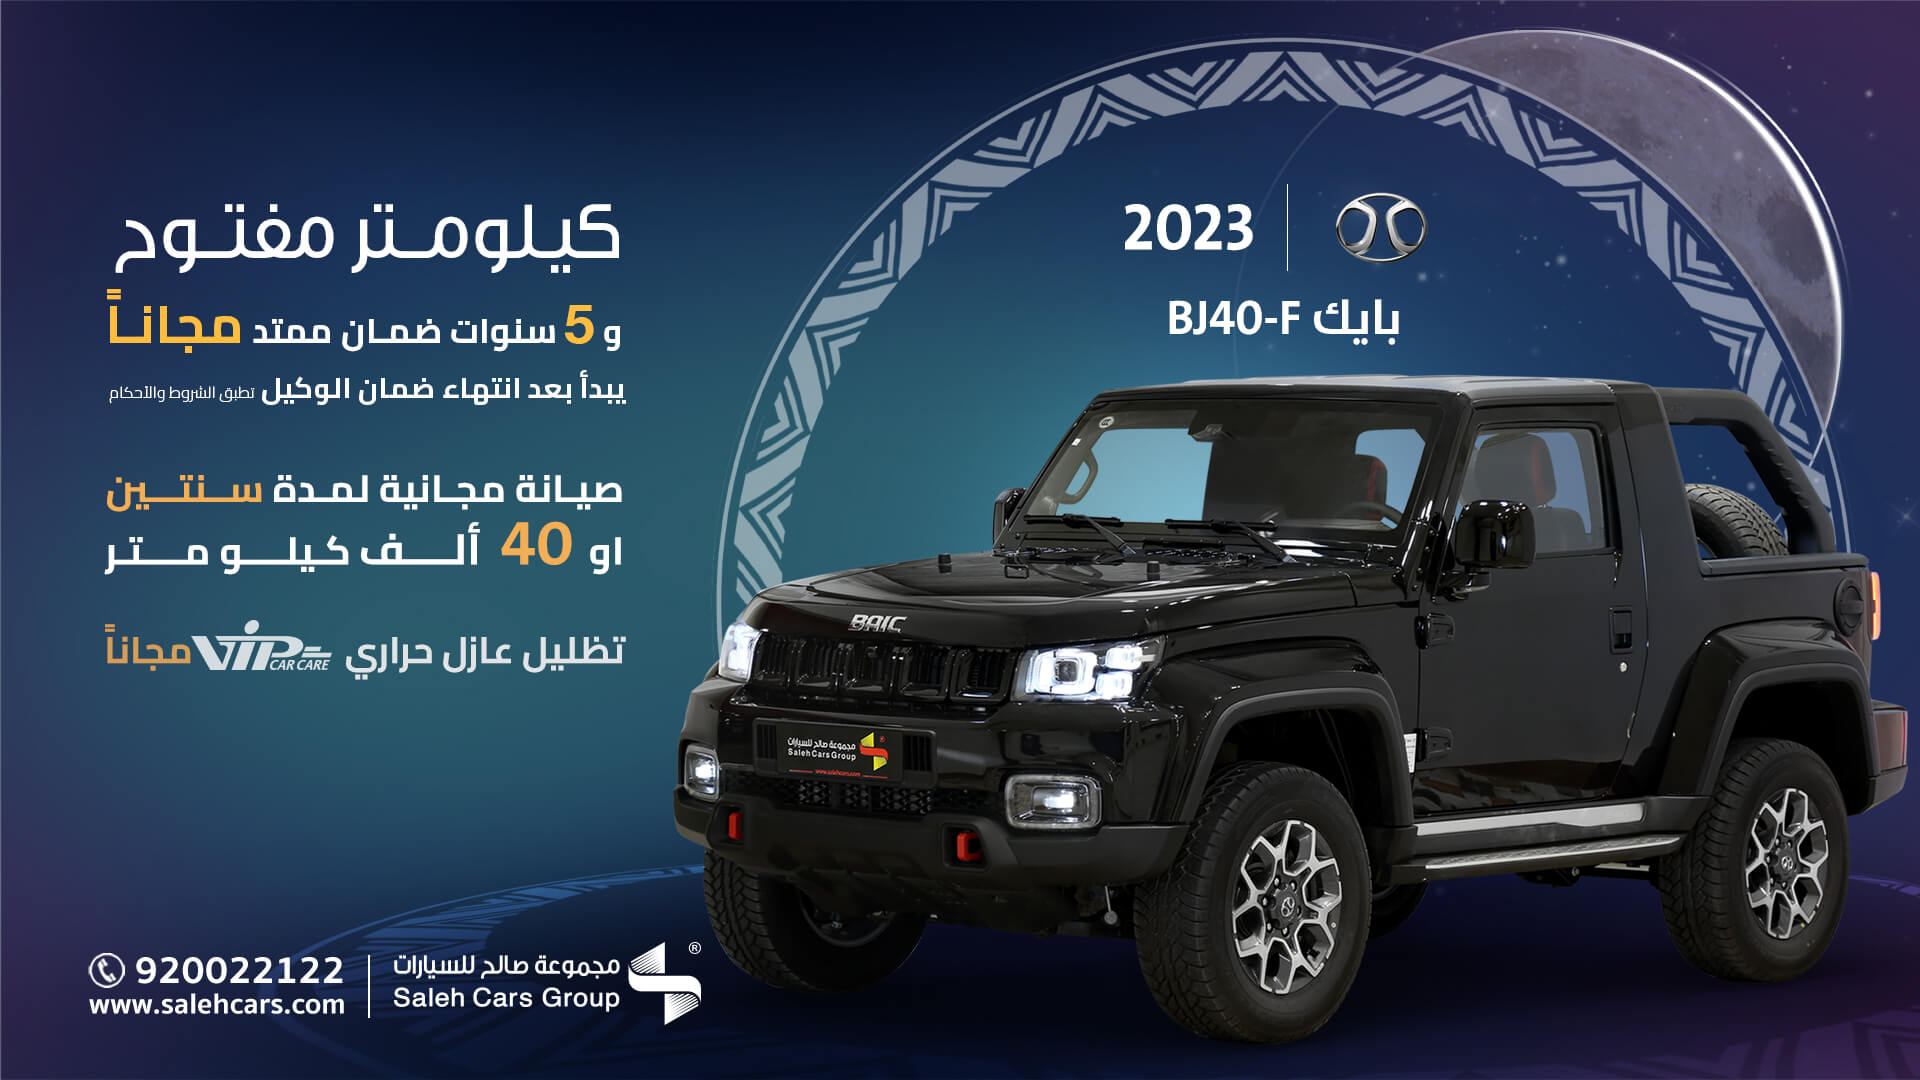 BAIC Abdullah Saleh car discounts for Ramadan 2023